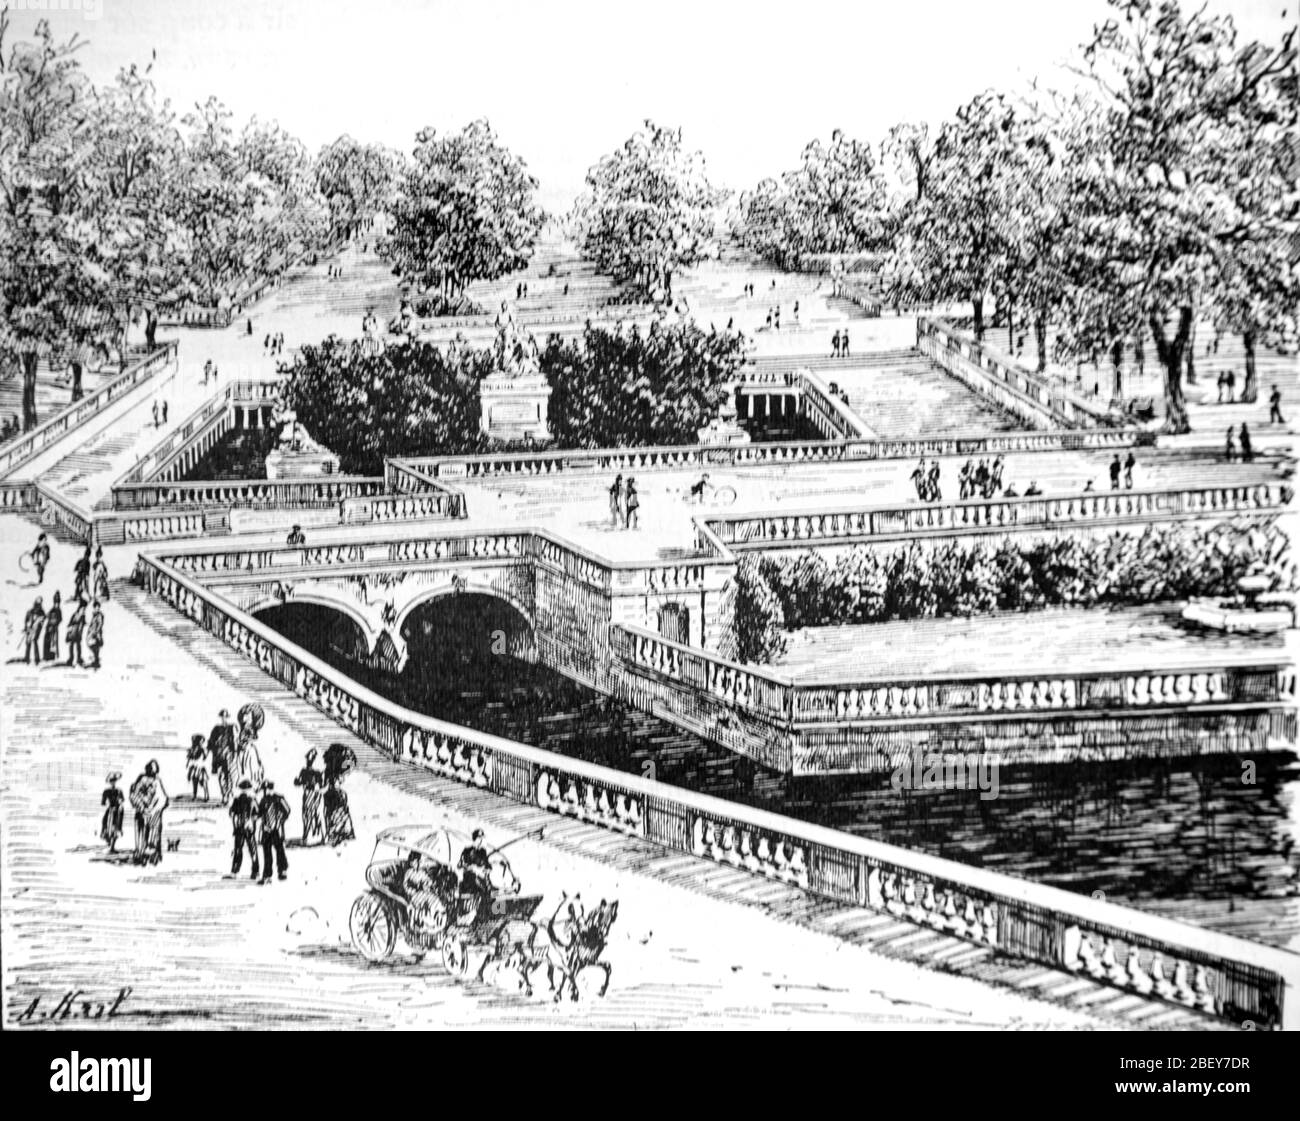 Jardin de la Fontaine Neoklassischer Park & Garten Nimes Frankreich. Vintage oder Alte Illustration oder Gravur 1888 Stockfoto